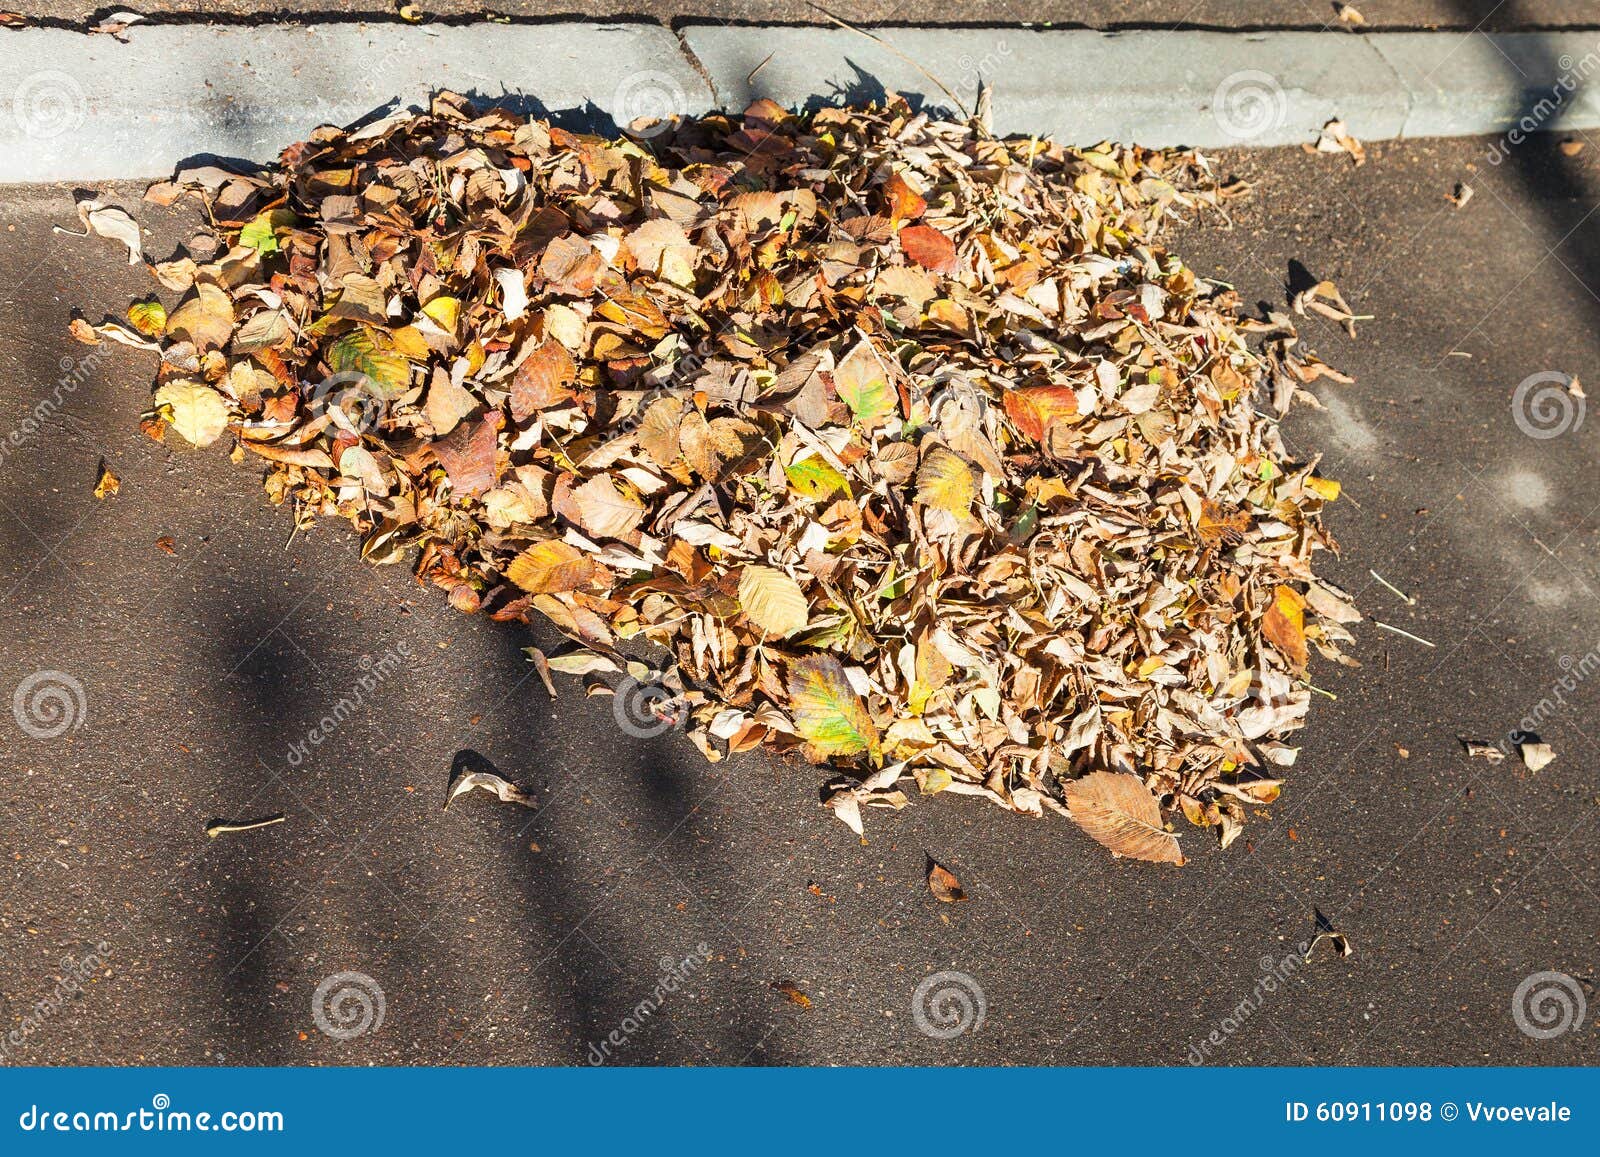 Сор лист на тротуаре в осени. Сор лист загоренный солнцем на тротуаре в утре осени